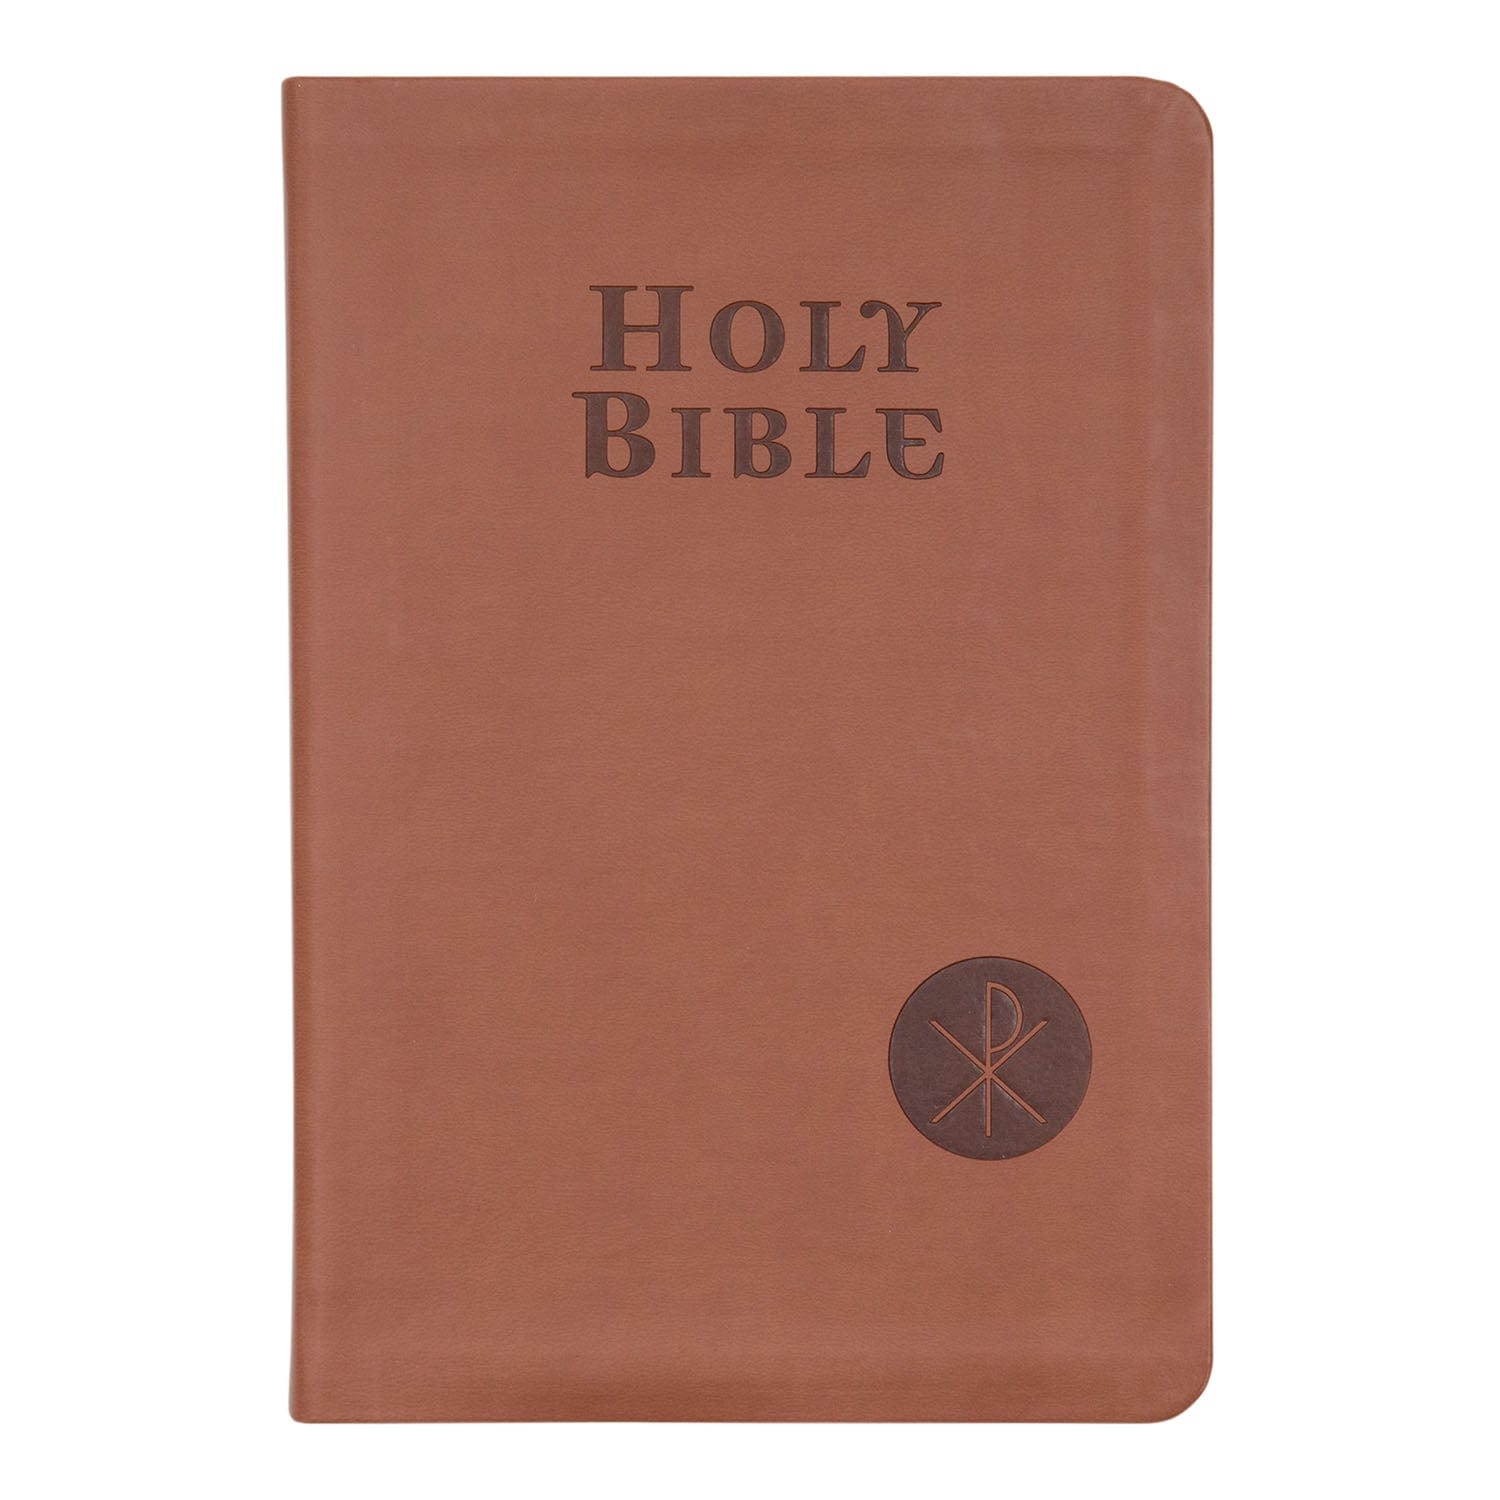 Fireside Catholic Publishing Fireside Catholic Youth Bible - NEXT! Gift Edition Holy Bible